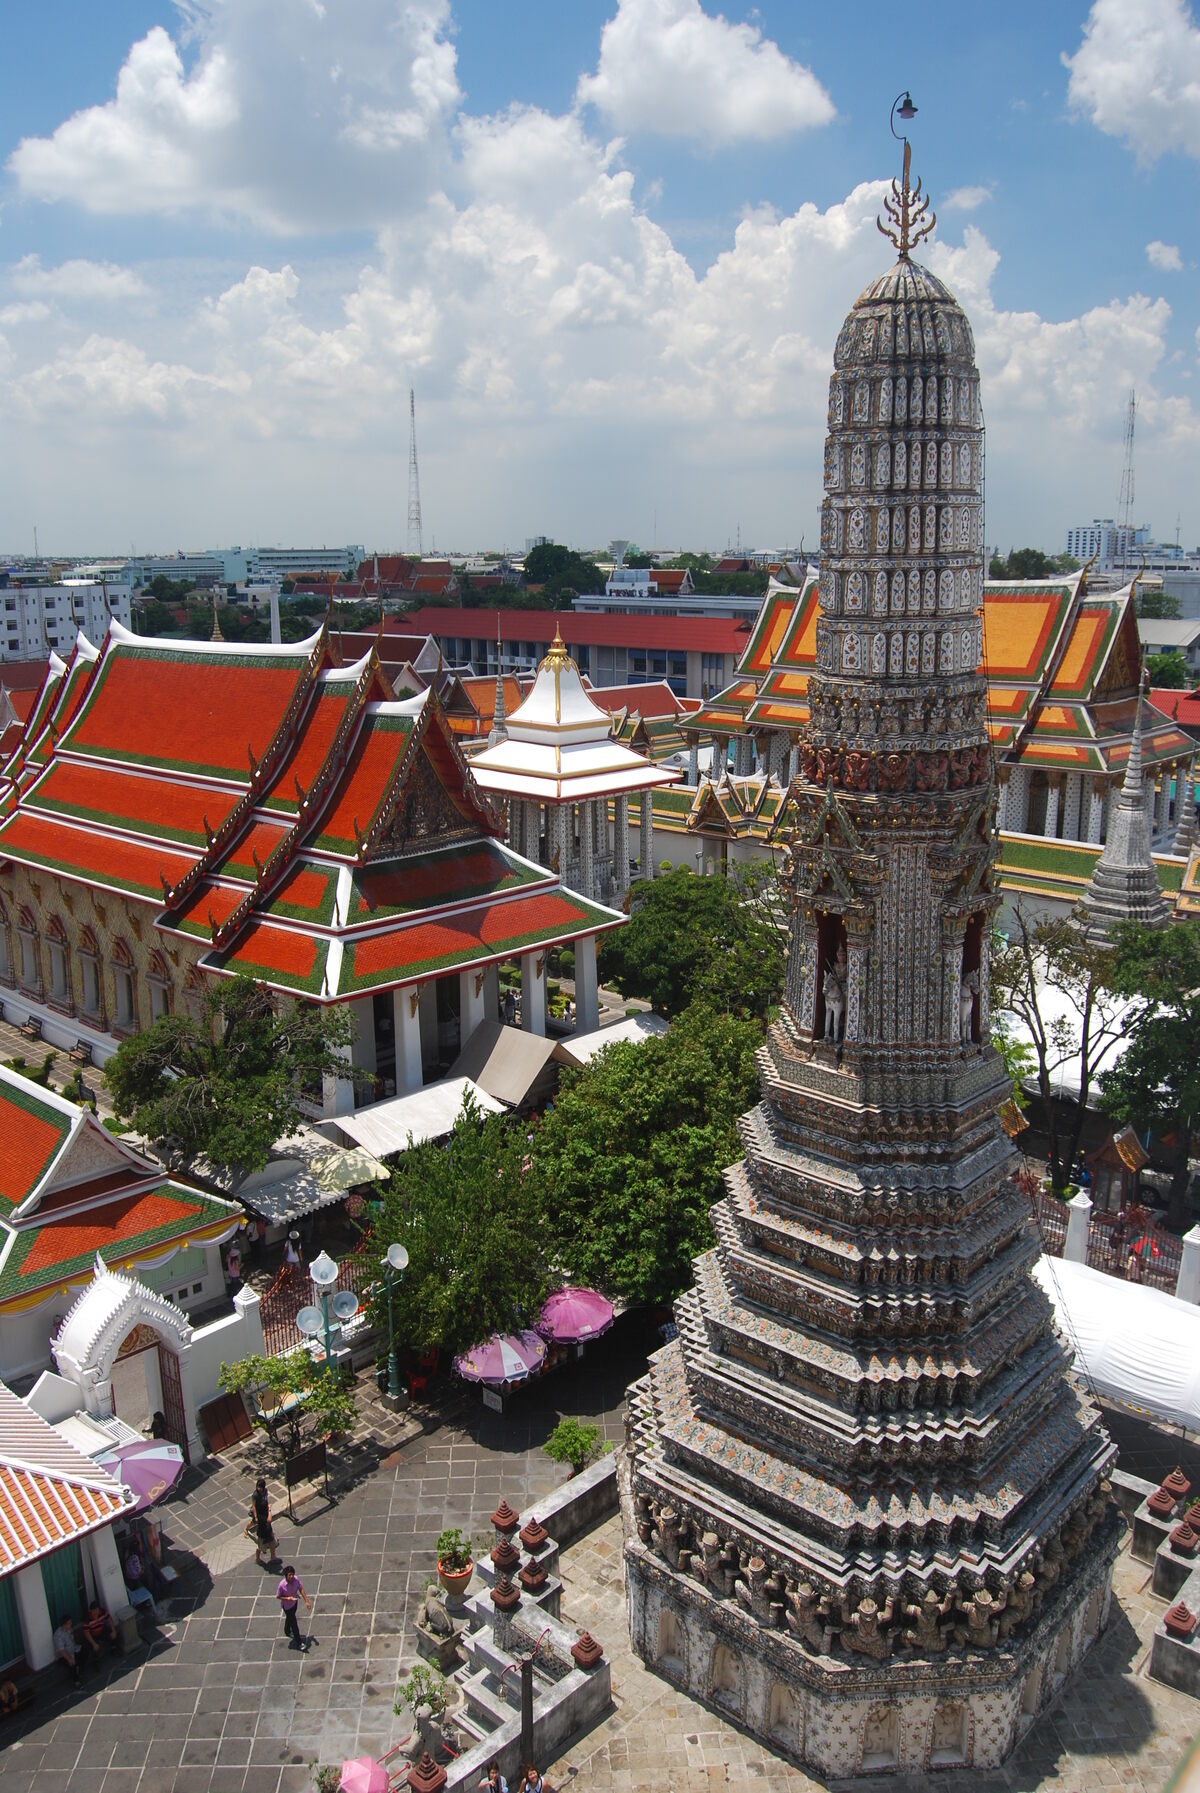 Wat Arun Khwaeng Wat Arun Thailand Atlas Obscura